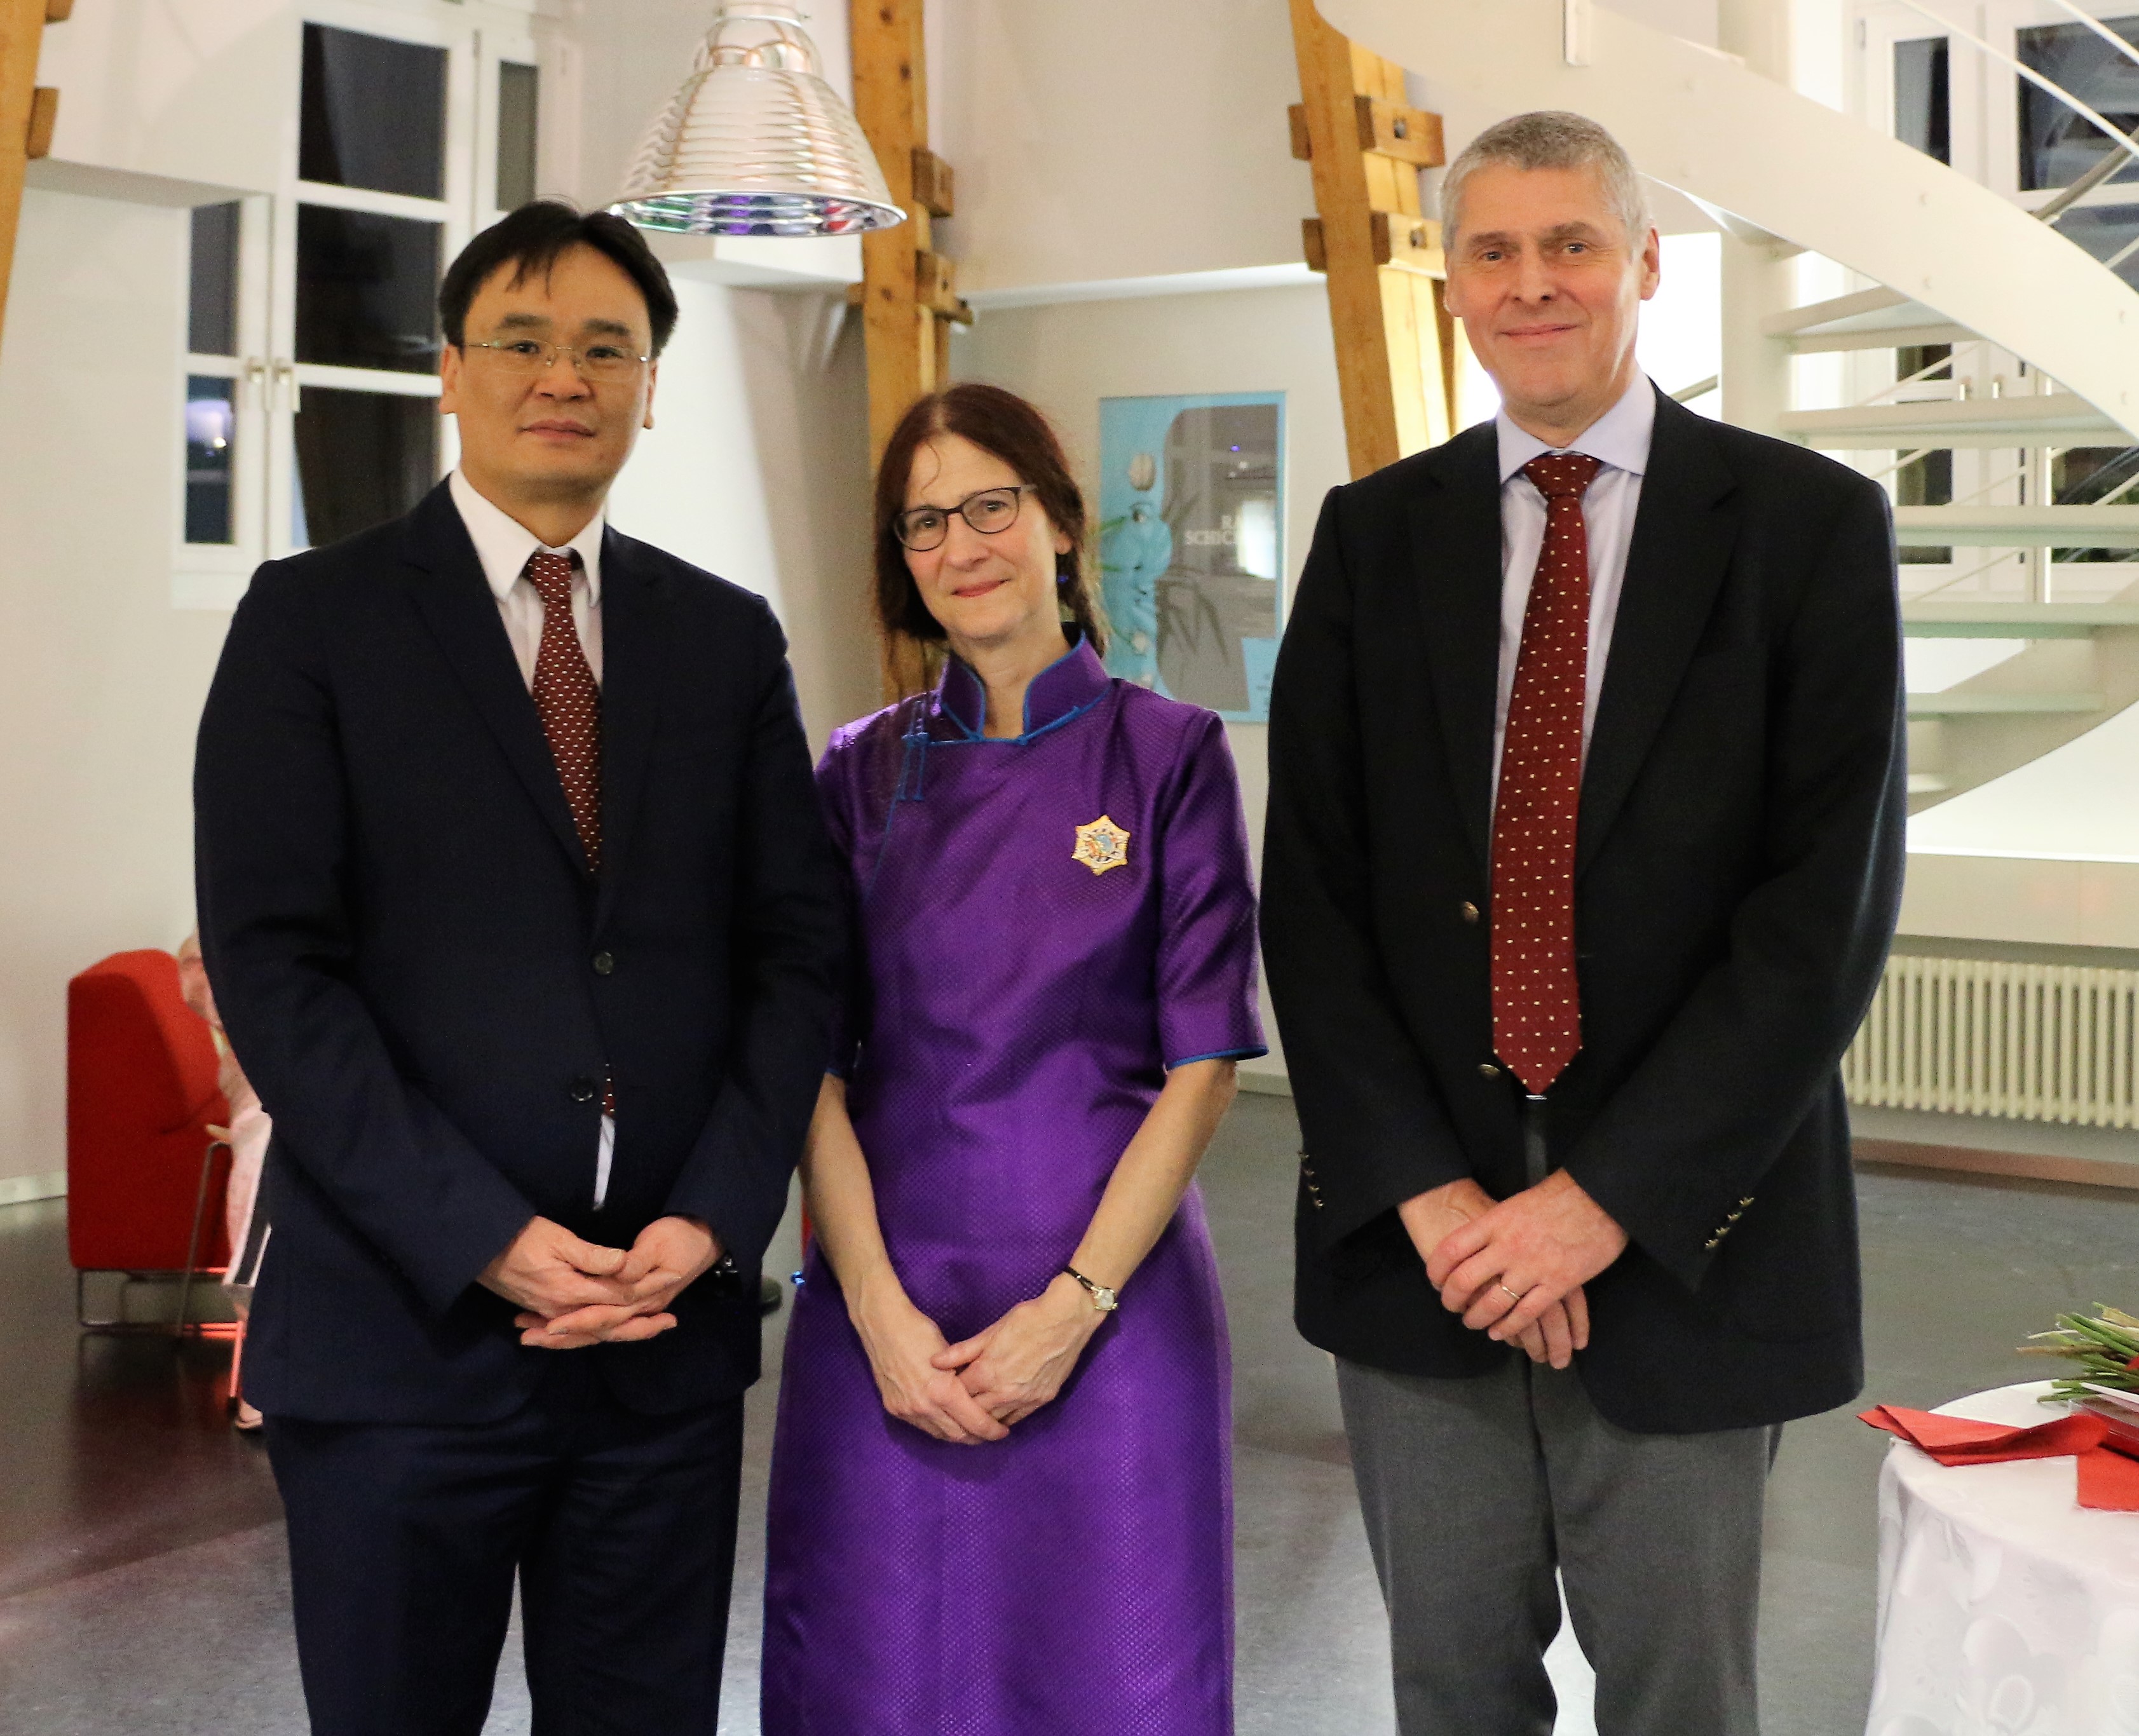 Professorin Karénina Kollmar-Paulenz trägt den Polar Star-Orden und ist mit dem mongolischen Botschafter Achgerel Nyamjav und Rektor Christian Leumann abgebildet.